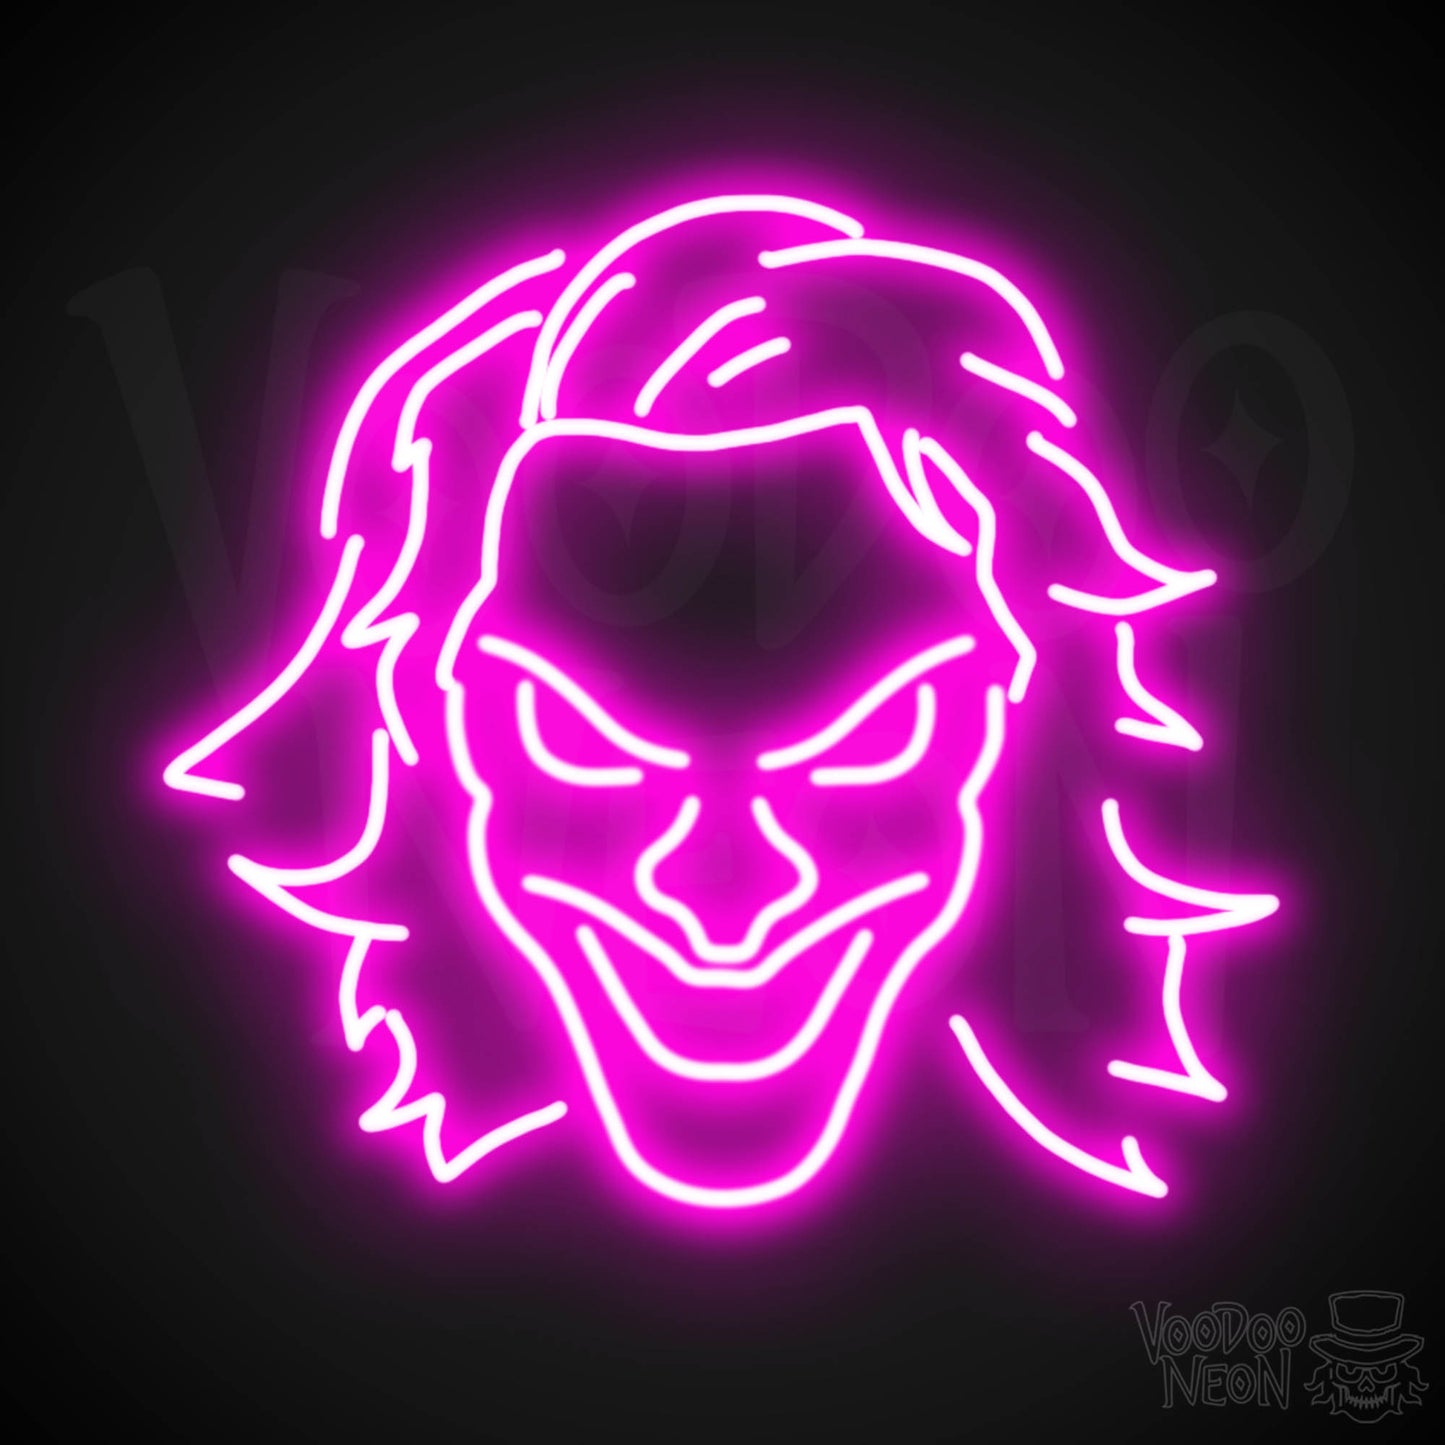 Joker Neon Sign - Neon Joker Sign - Joker LED Wall Art - Color Pink